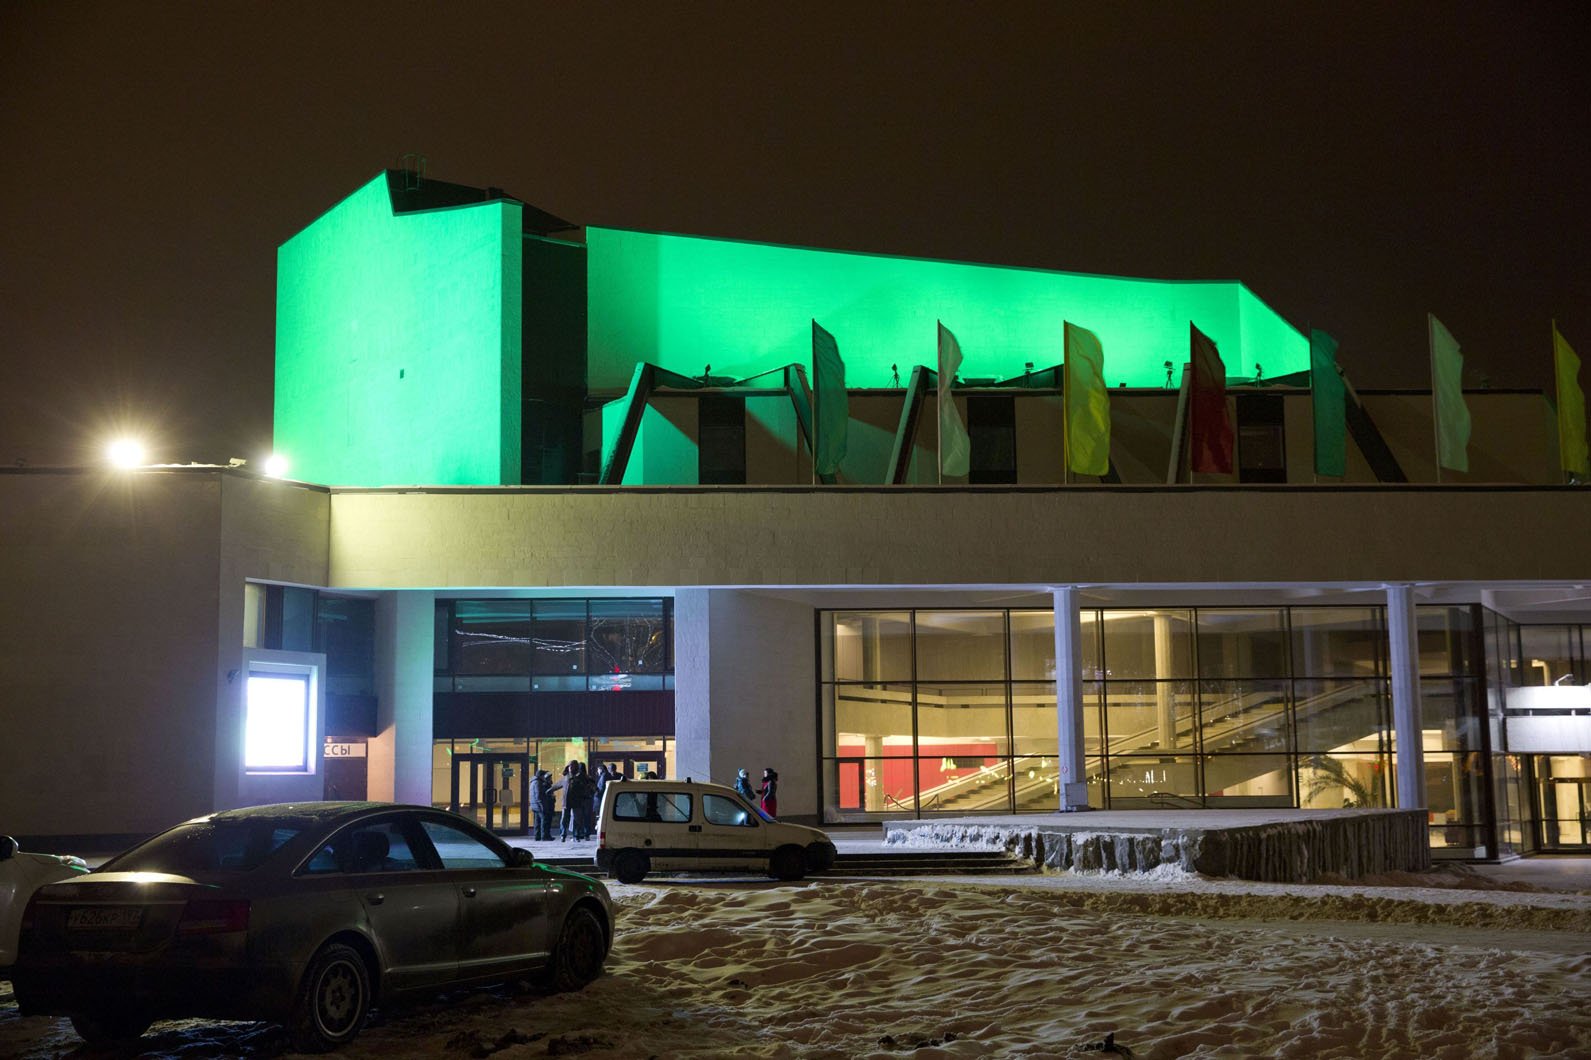 Архитектурное освещение фасадов Центра культуры и досуга «Зеленоград»